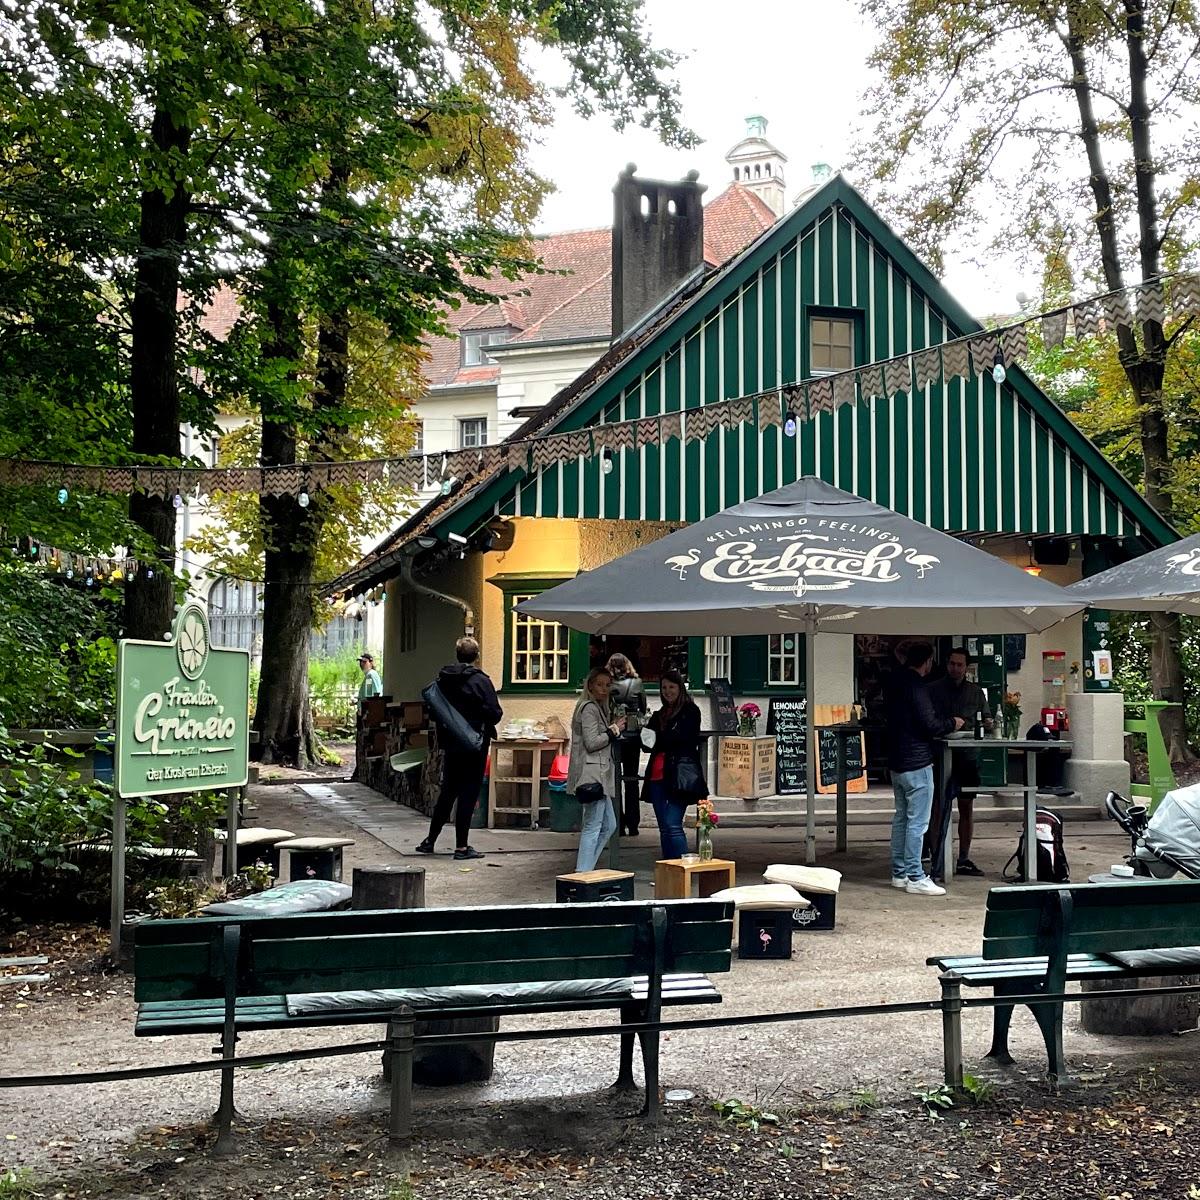 Restaurant "Fräulein Grüneis" in München